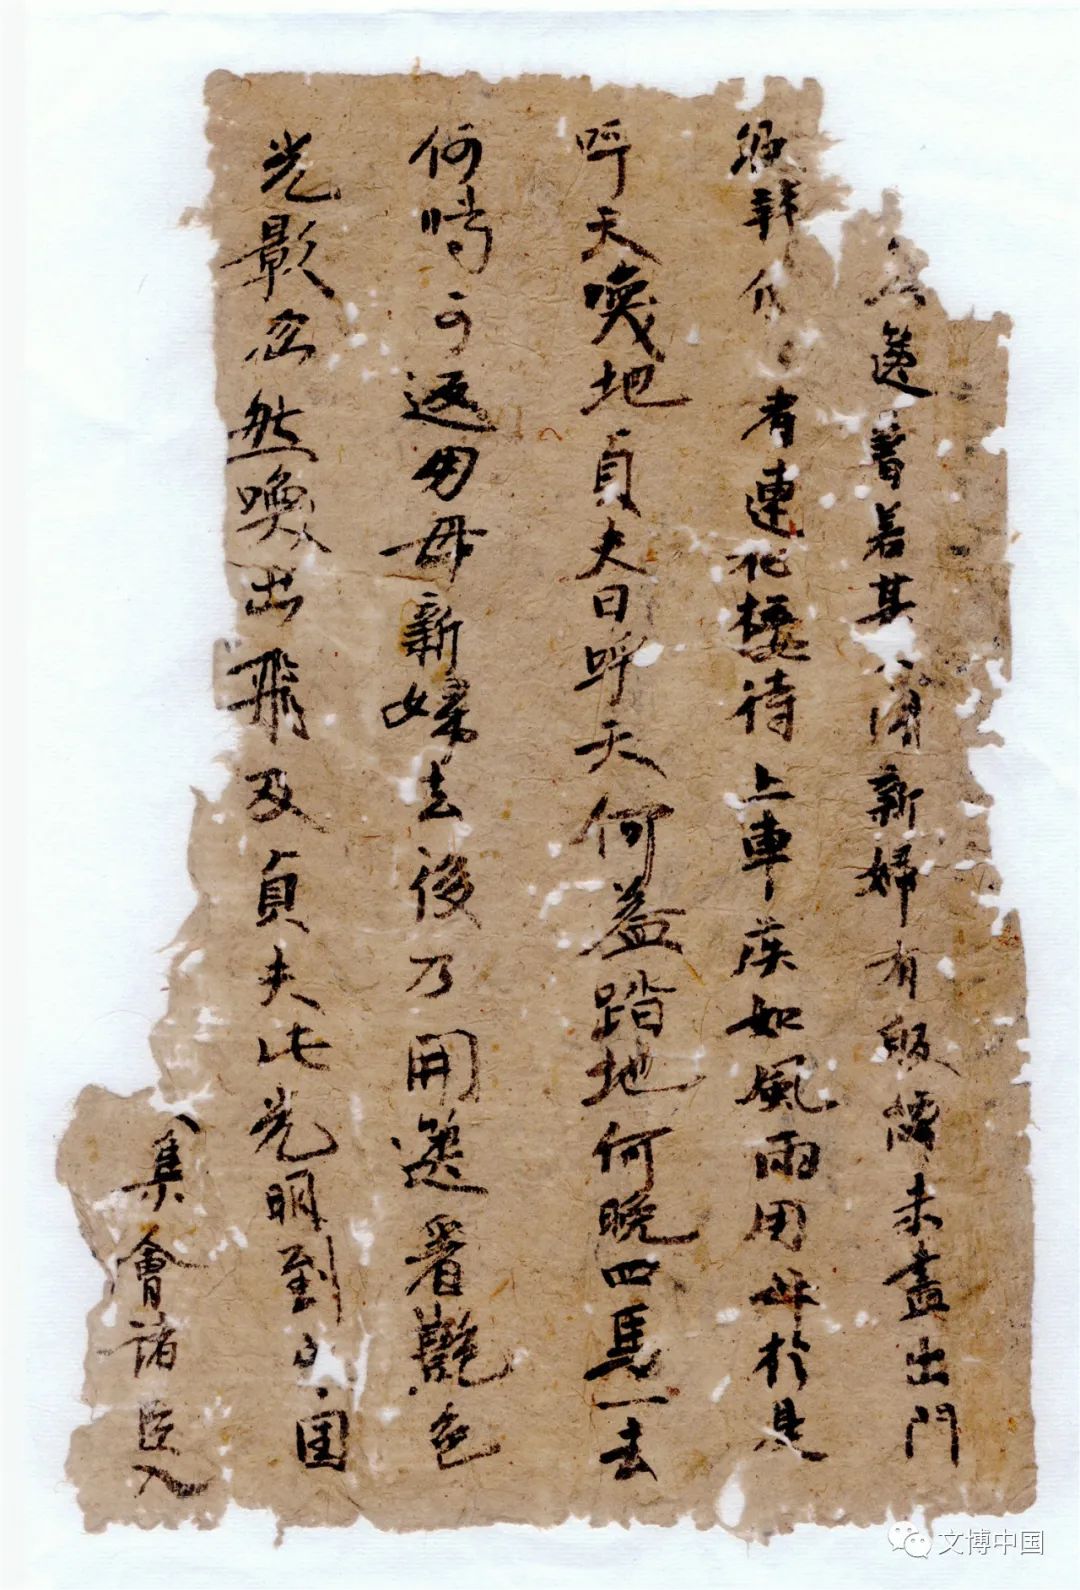 七百余唐代纸文书、木牍出土于新疆孔雀河烽燧群